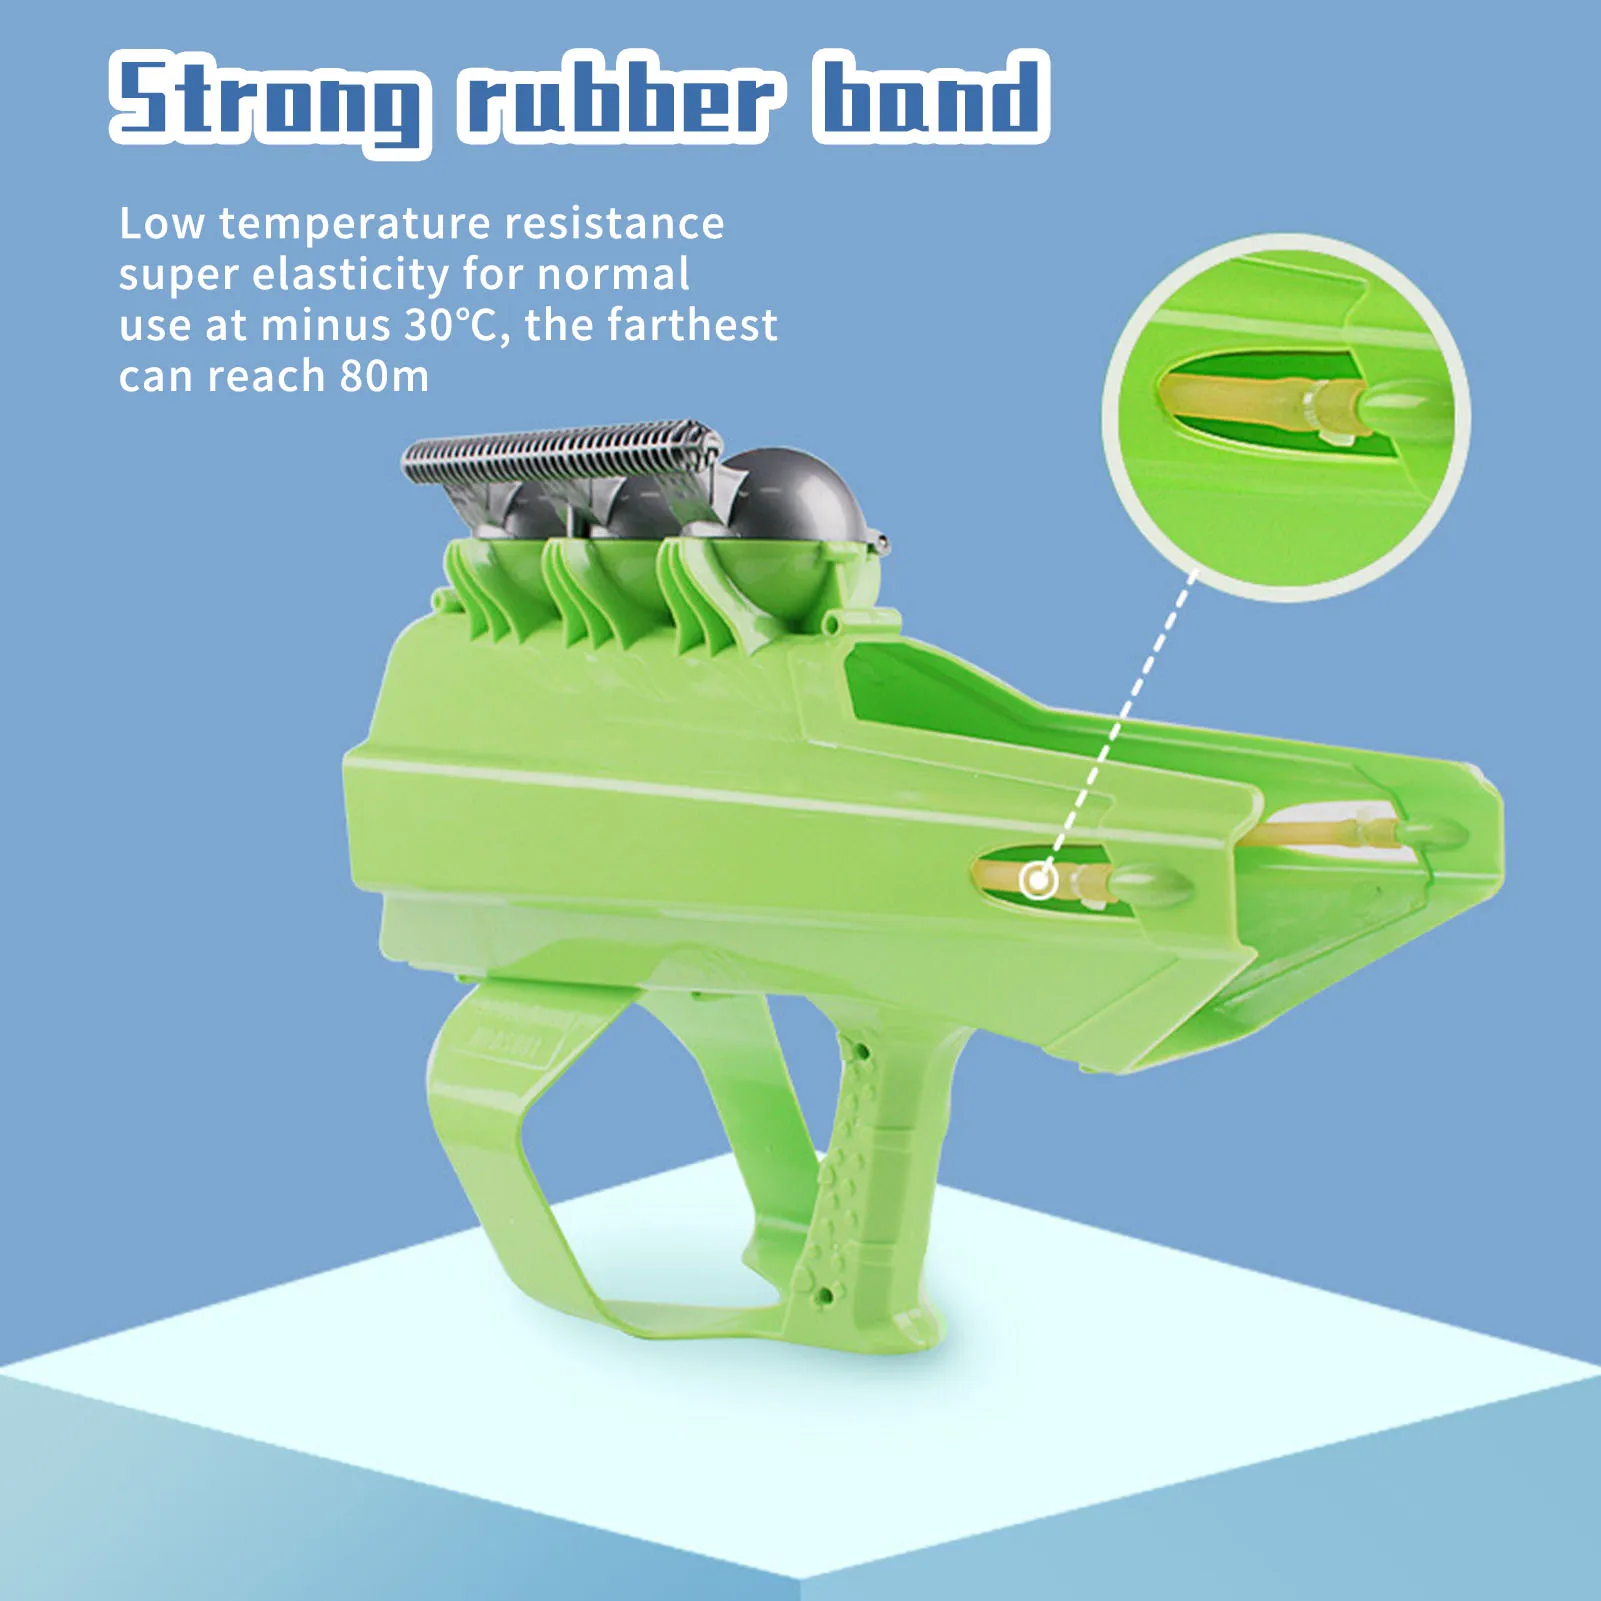 Maker blíster lanzador redondo con 3 bolas, juguete de lucha de invierno para niños y adultos al aire libre, Farthest Rang